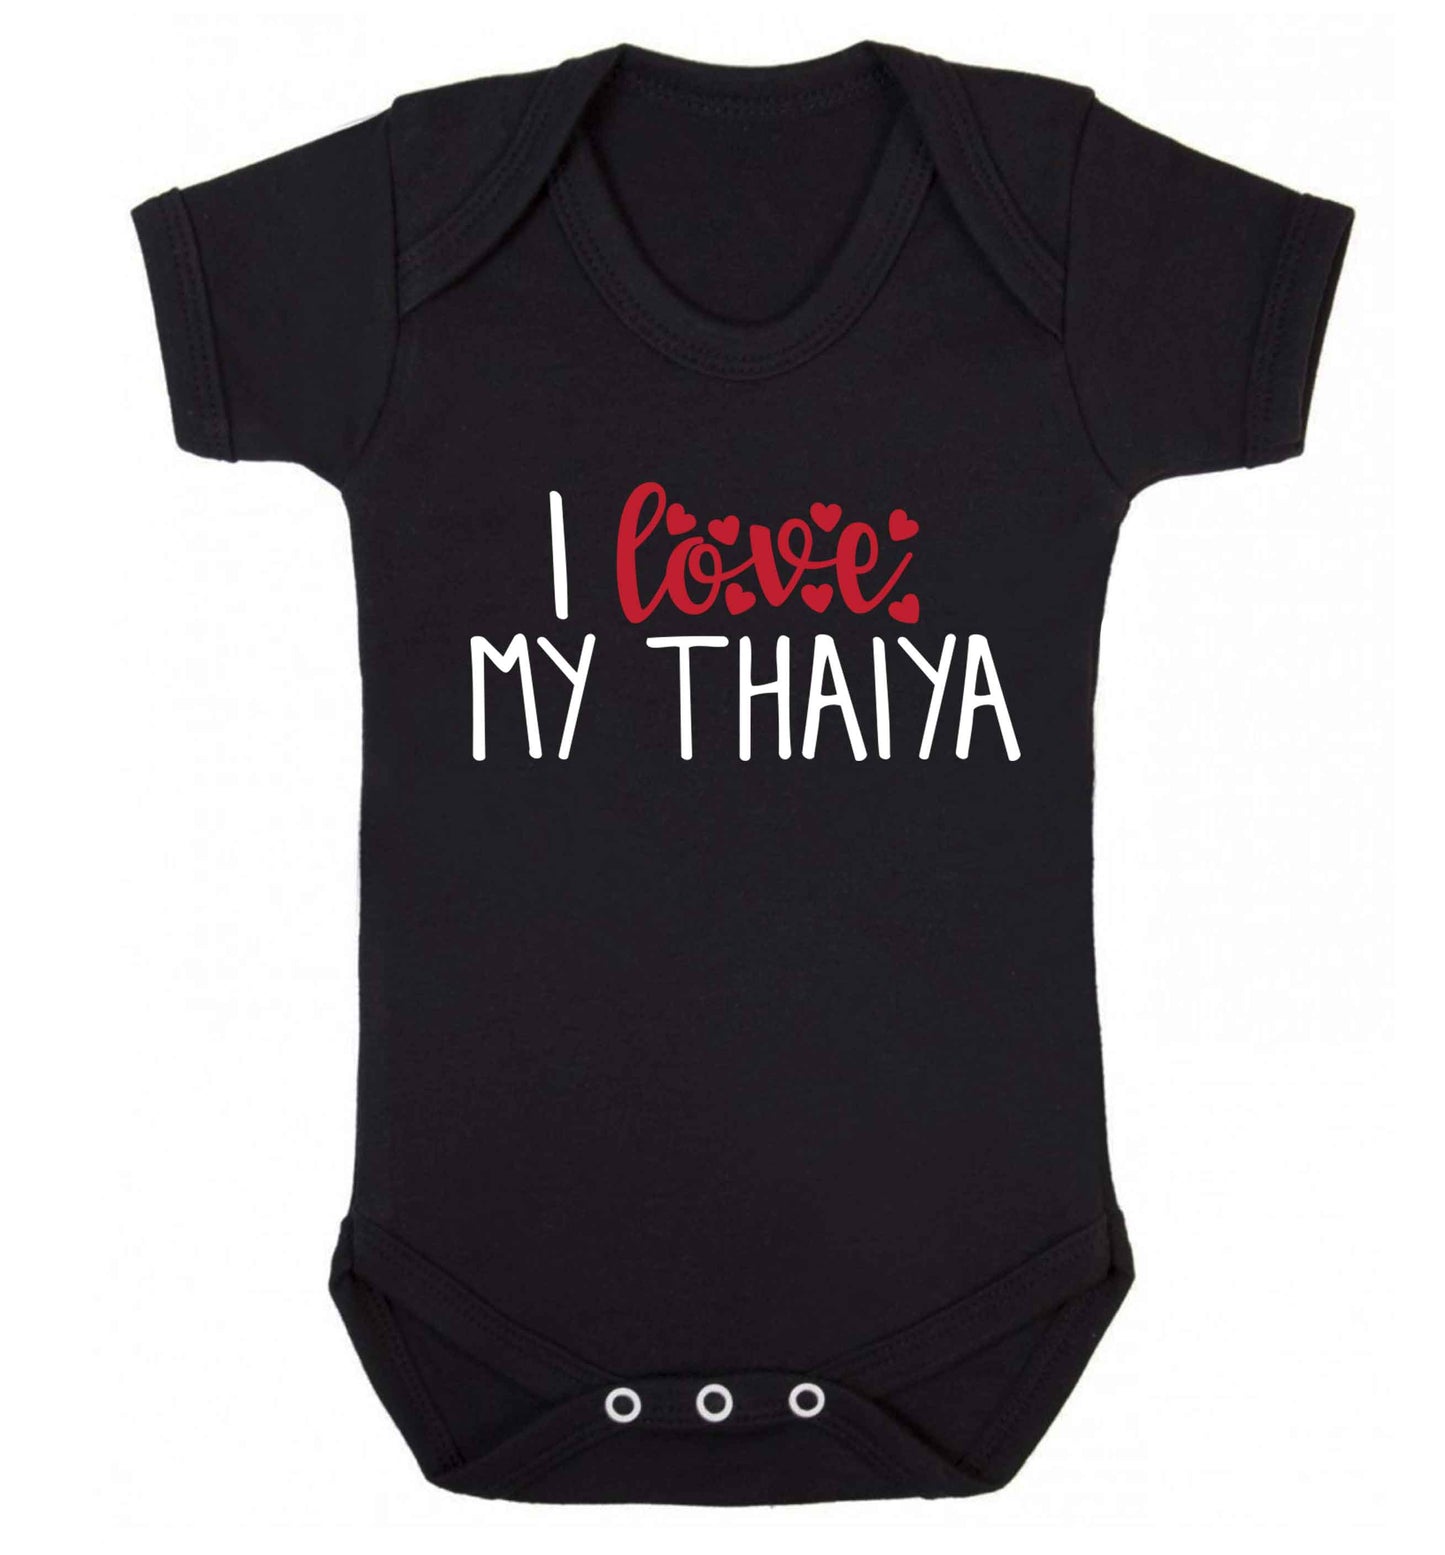 I love my thaiya Baby Vest black 18-24 months